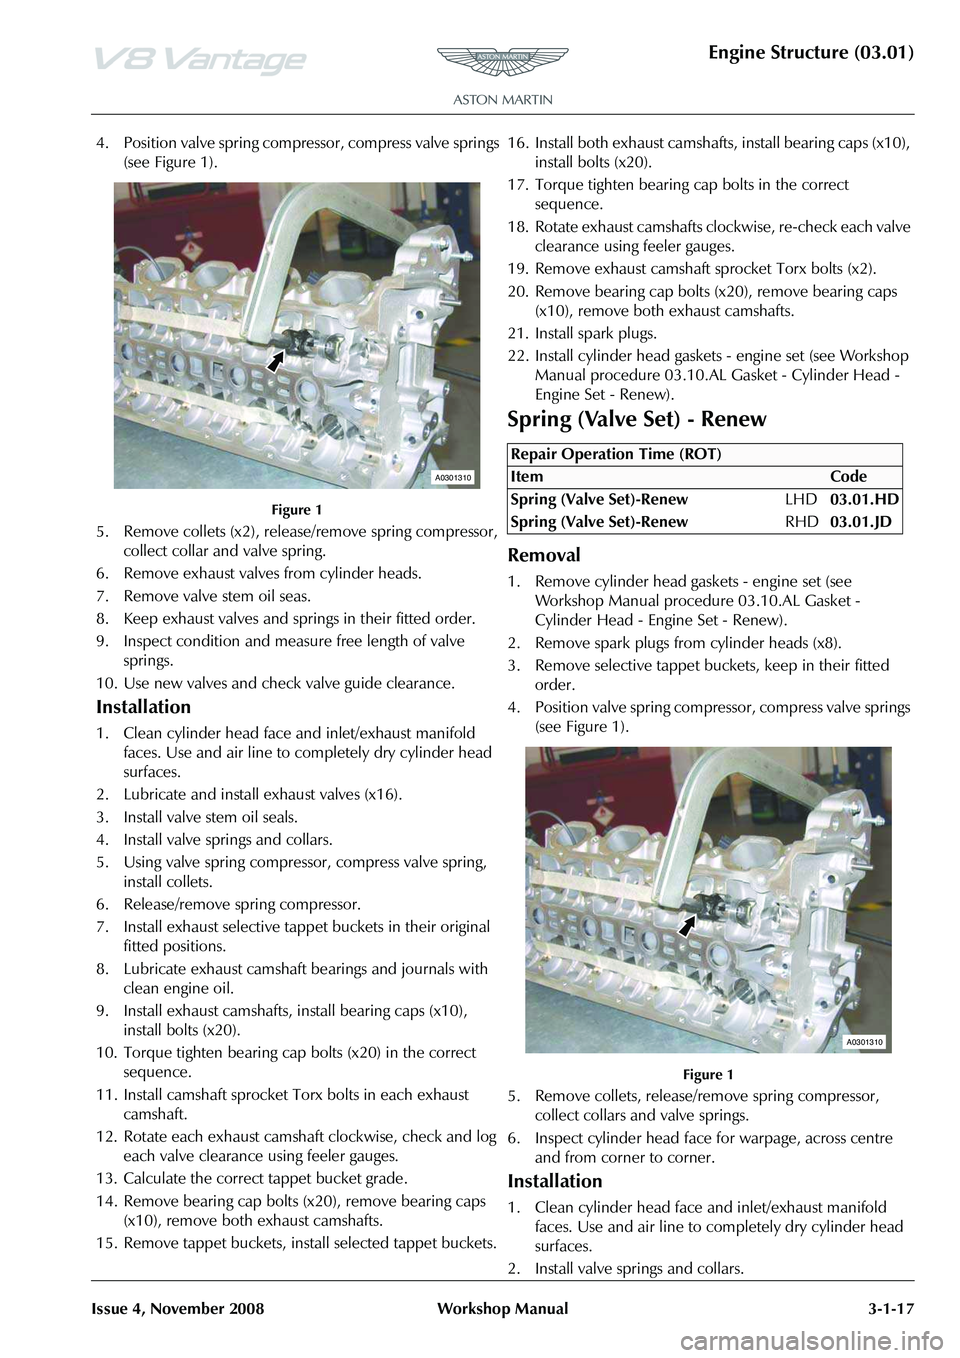 ASTON MARTIN V8 VANTAGE 2010  Workshop Manual Engine Structure (03.01)
Issue 4, November 2008Workshop Manual 3-1-17
4. Position valve spring compressor, compress valve springs 
(see Figure 1).
Figure 1
5. Remove collets (x2), release/remove sprin